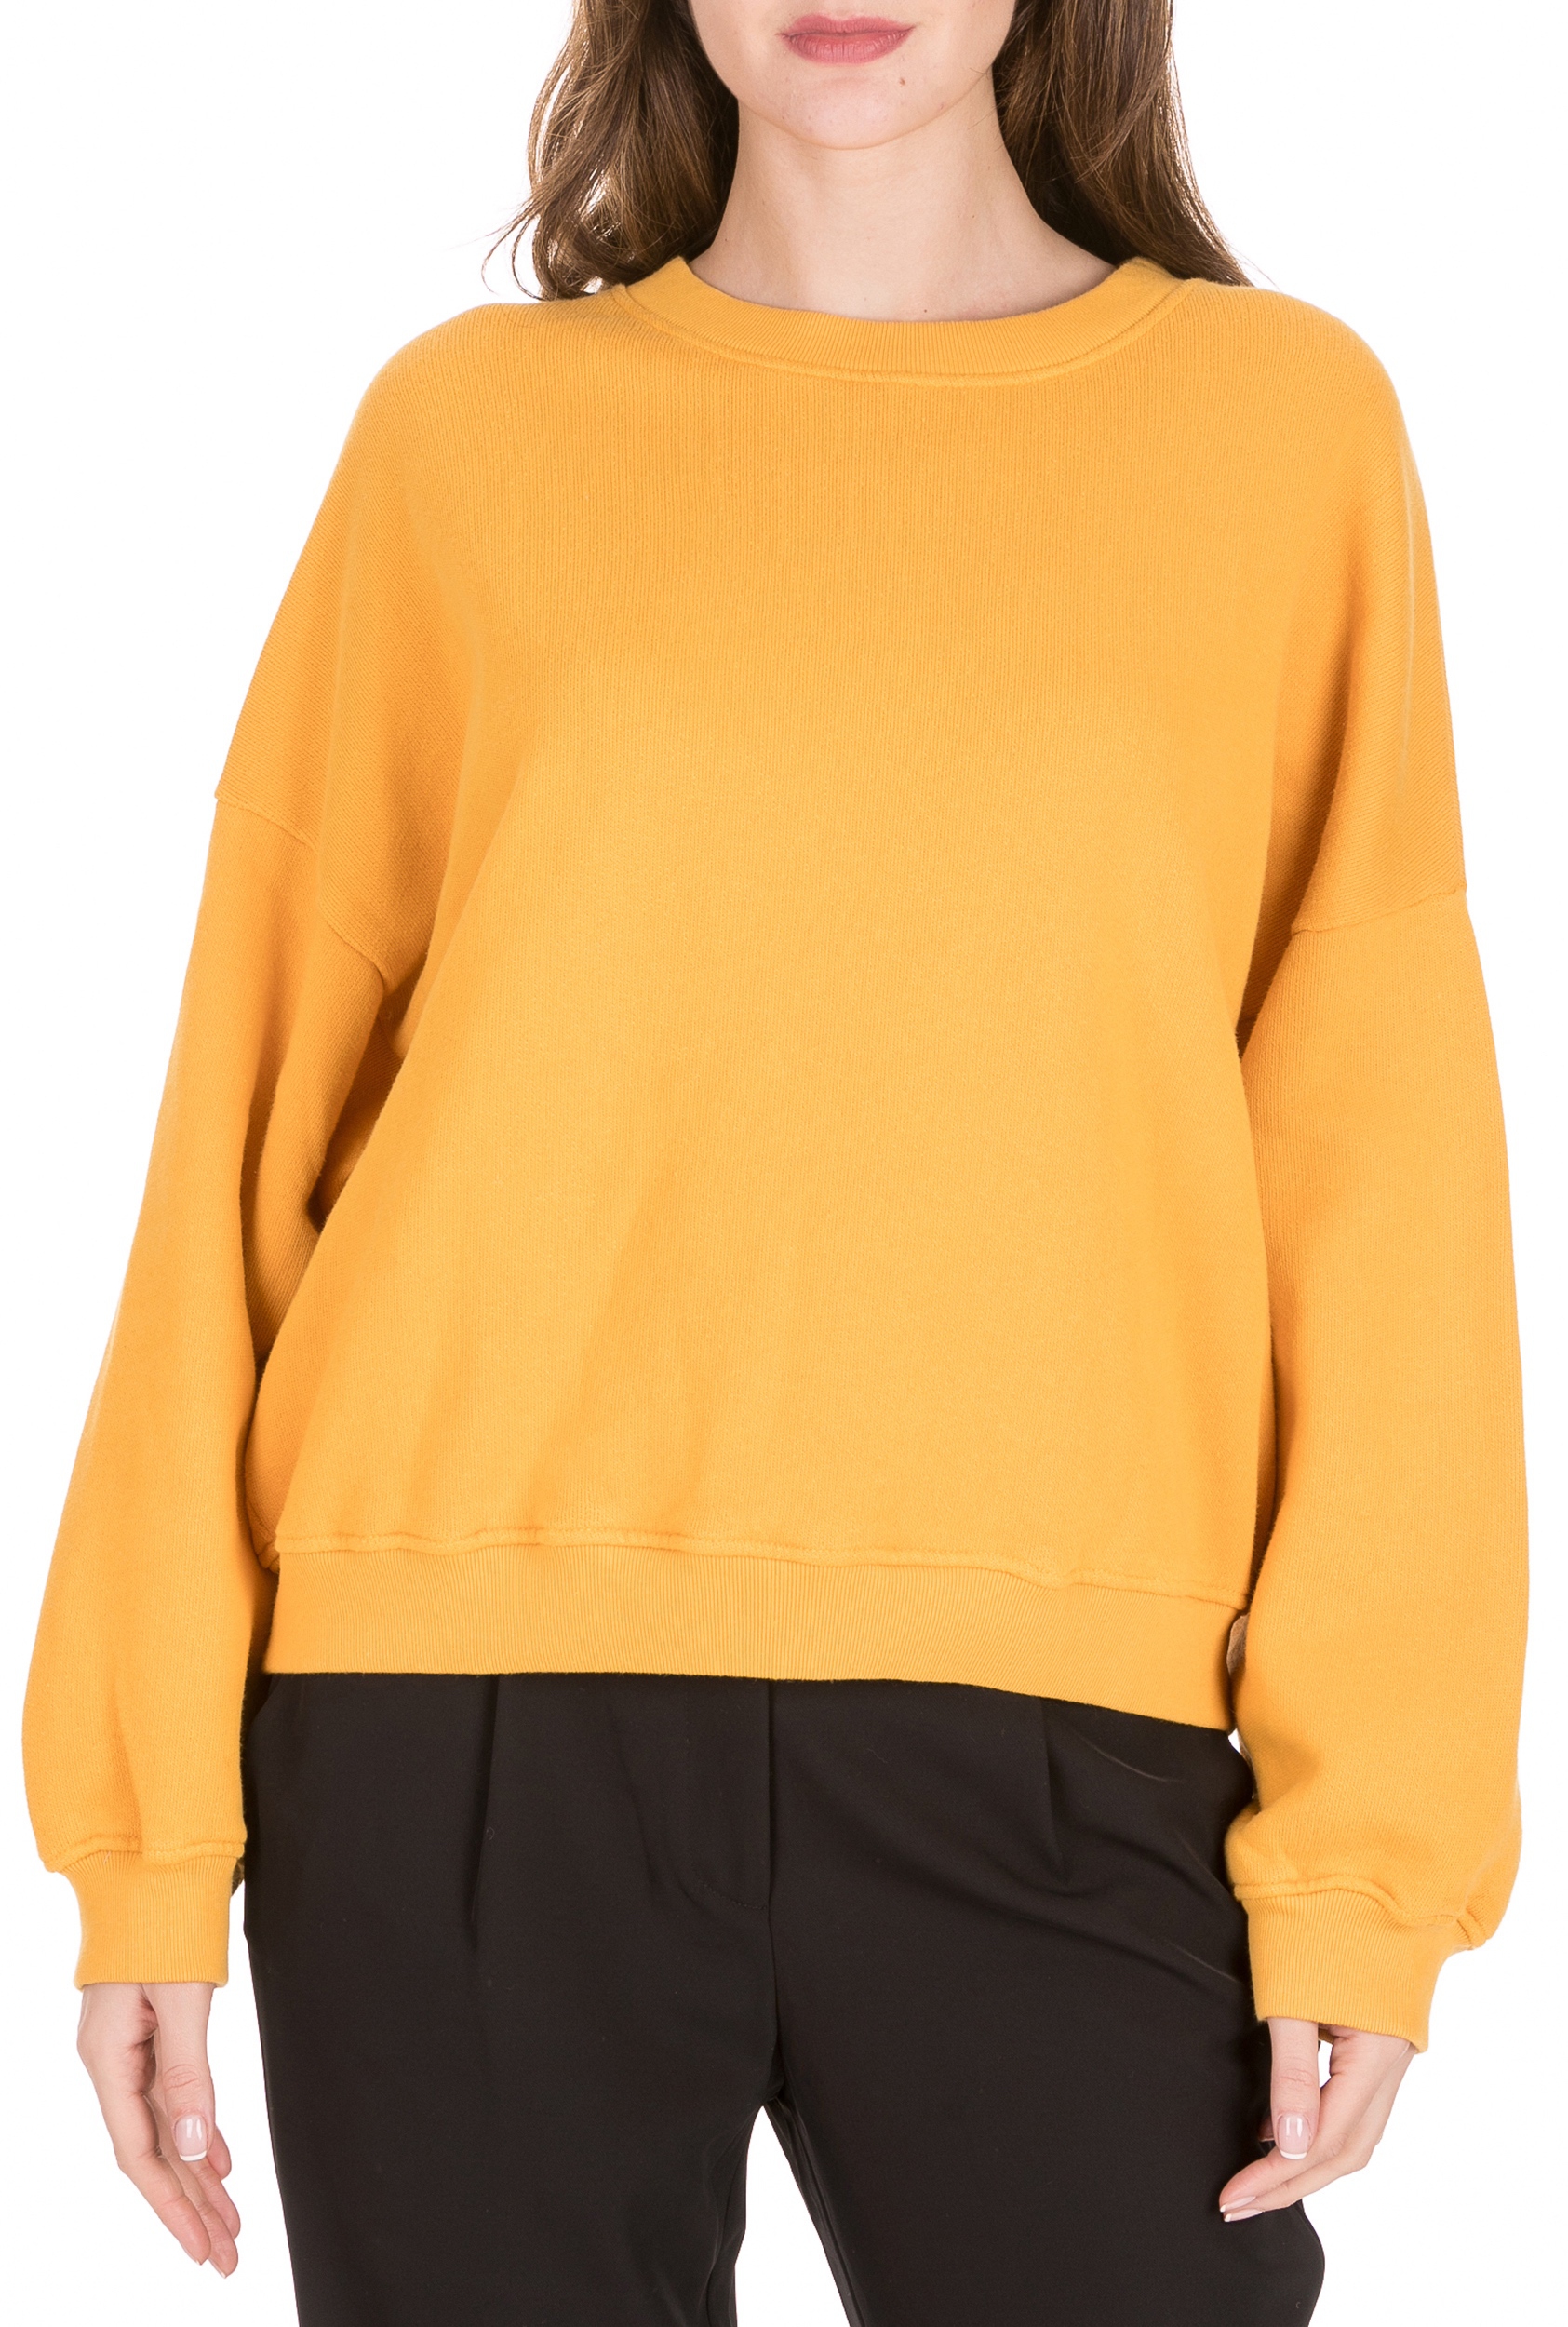 Γυναικεία/Ρούχα/Φούτερ/Μπλούζες AMERICAN VINTAGE - Γυναικεία φούτερ μπλούζα AMERICAN VINTAGE κίτρινη